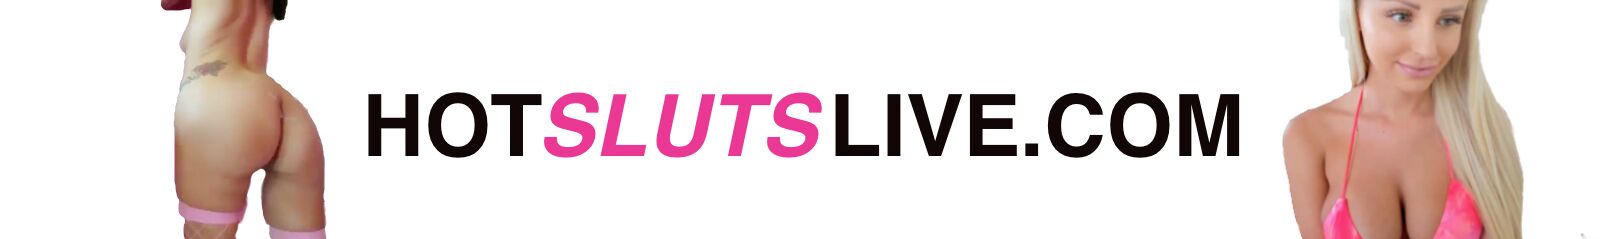 Hot sluts Live